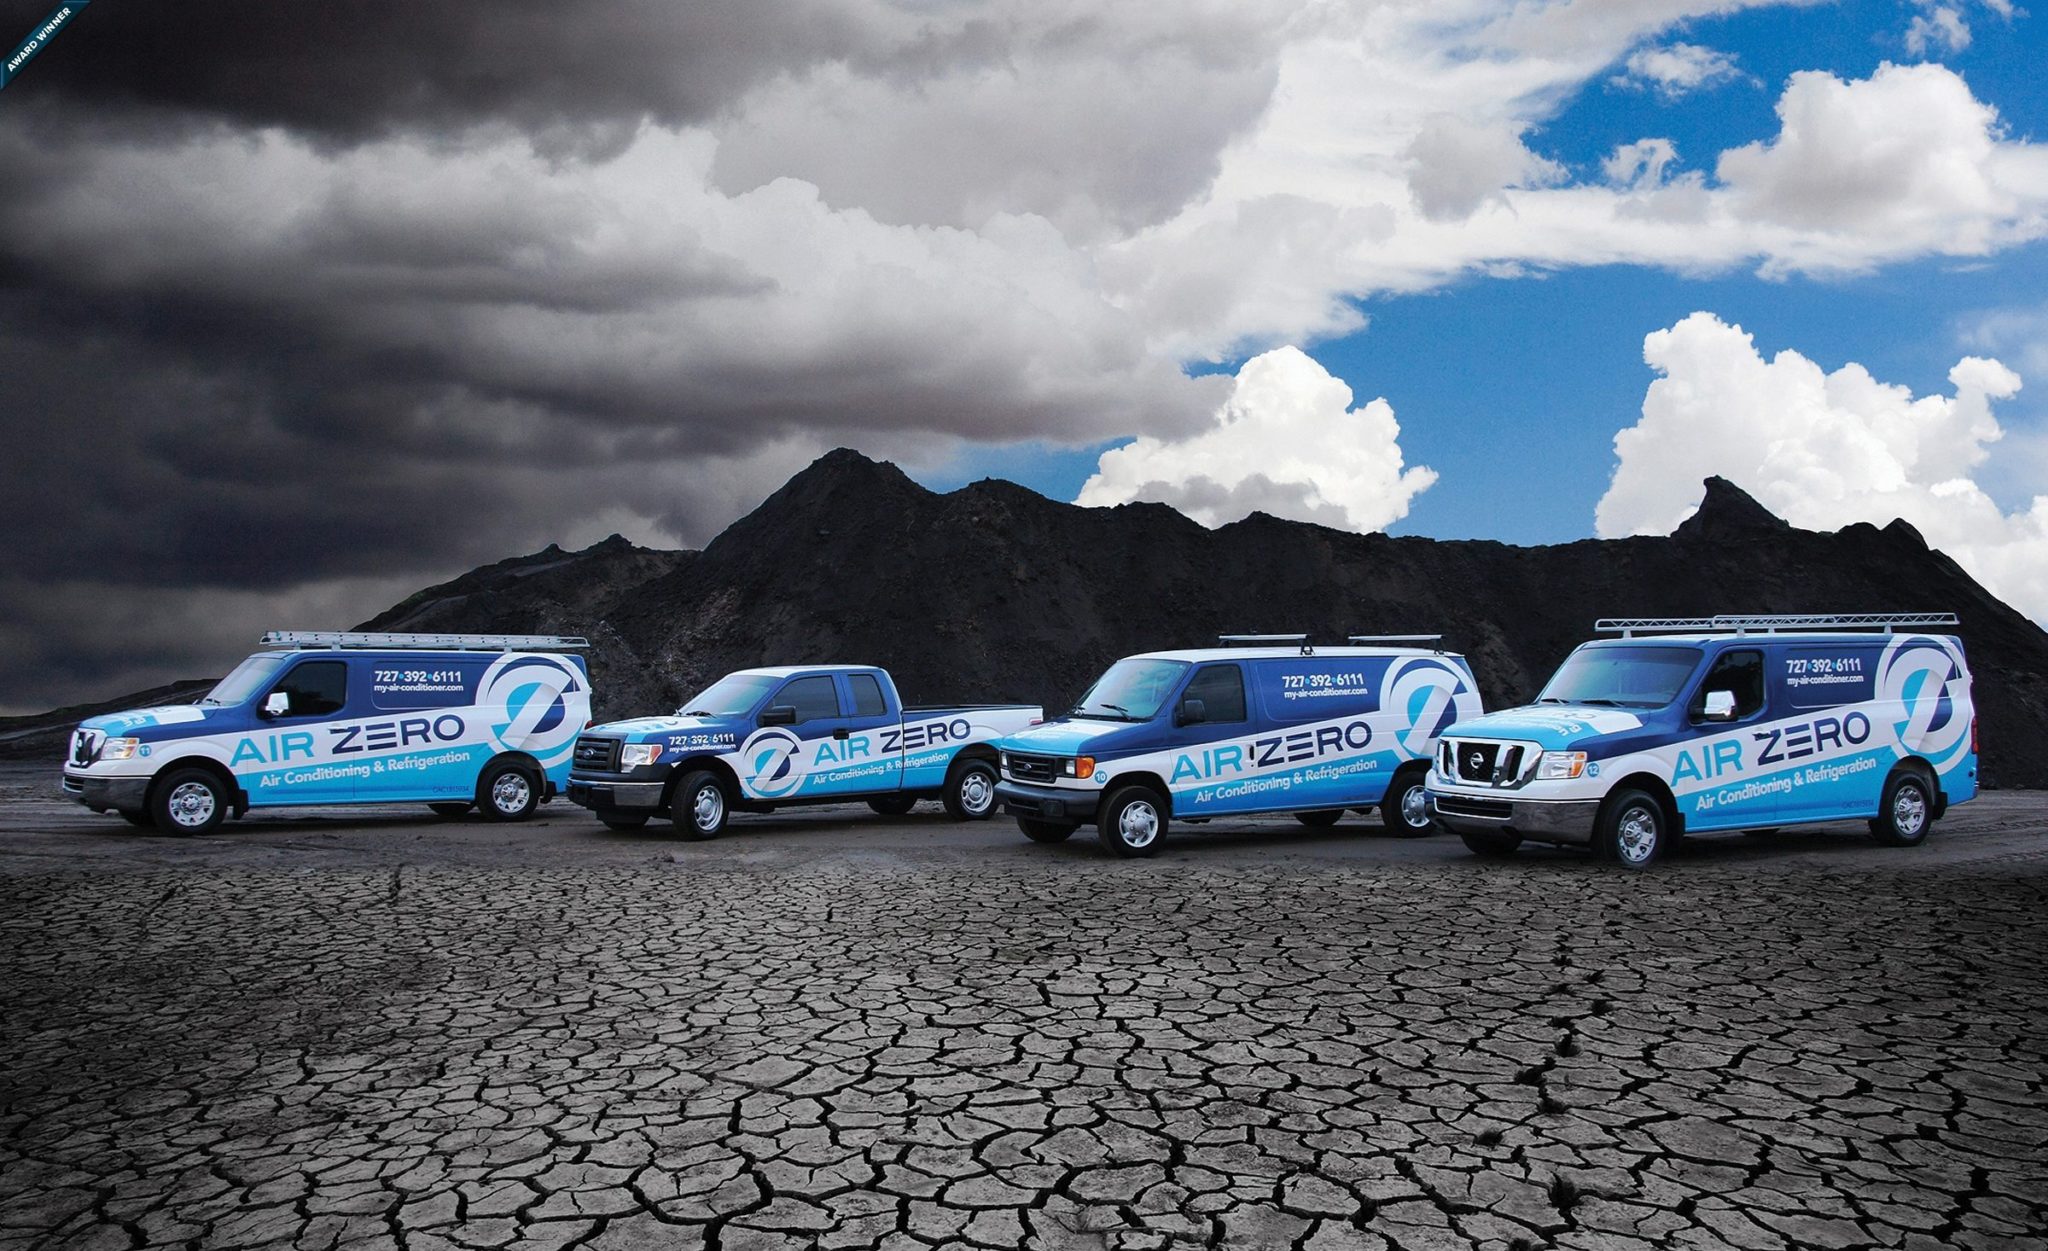 Award-winning vehicle advertising and fleet design - HVACR Magazine Tops in Trucks Winner